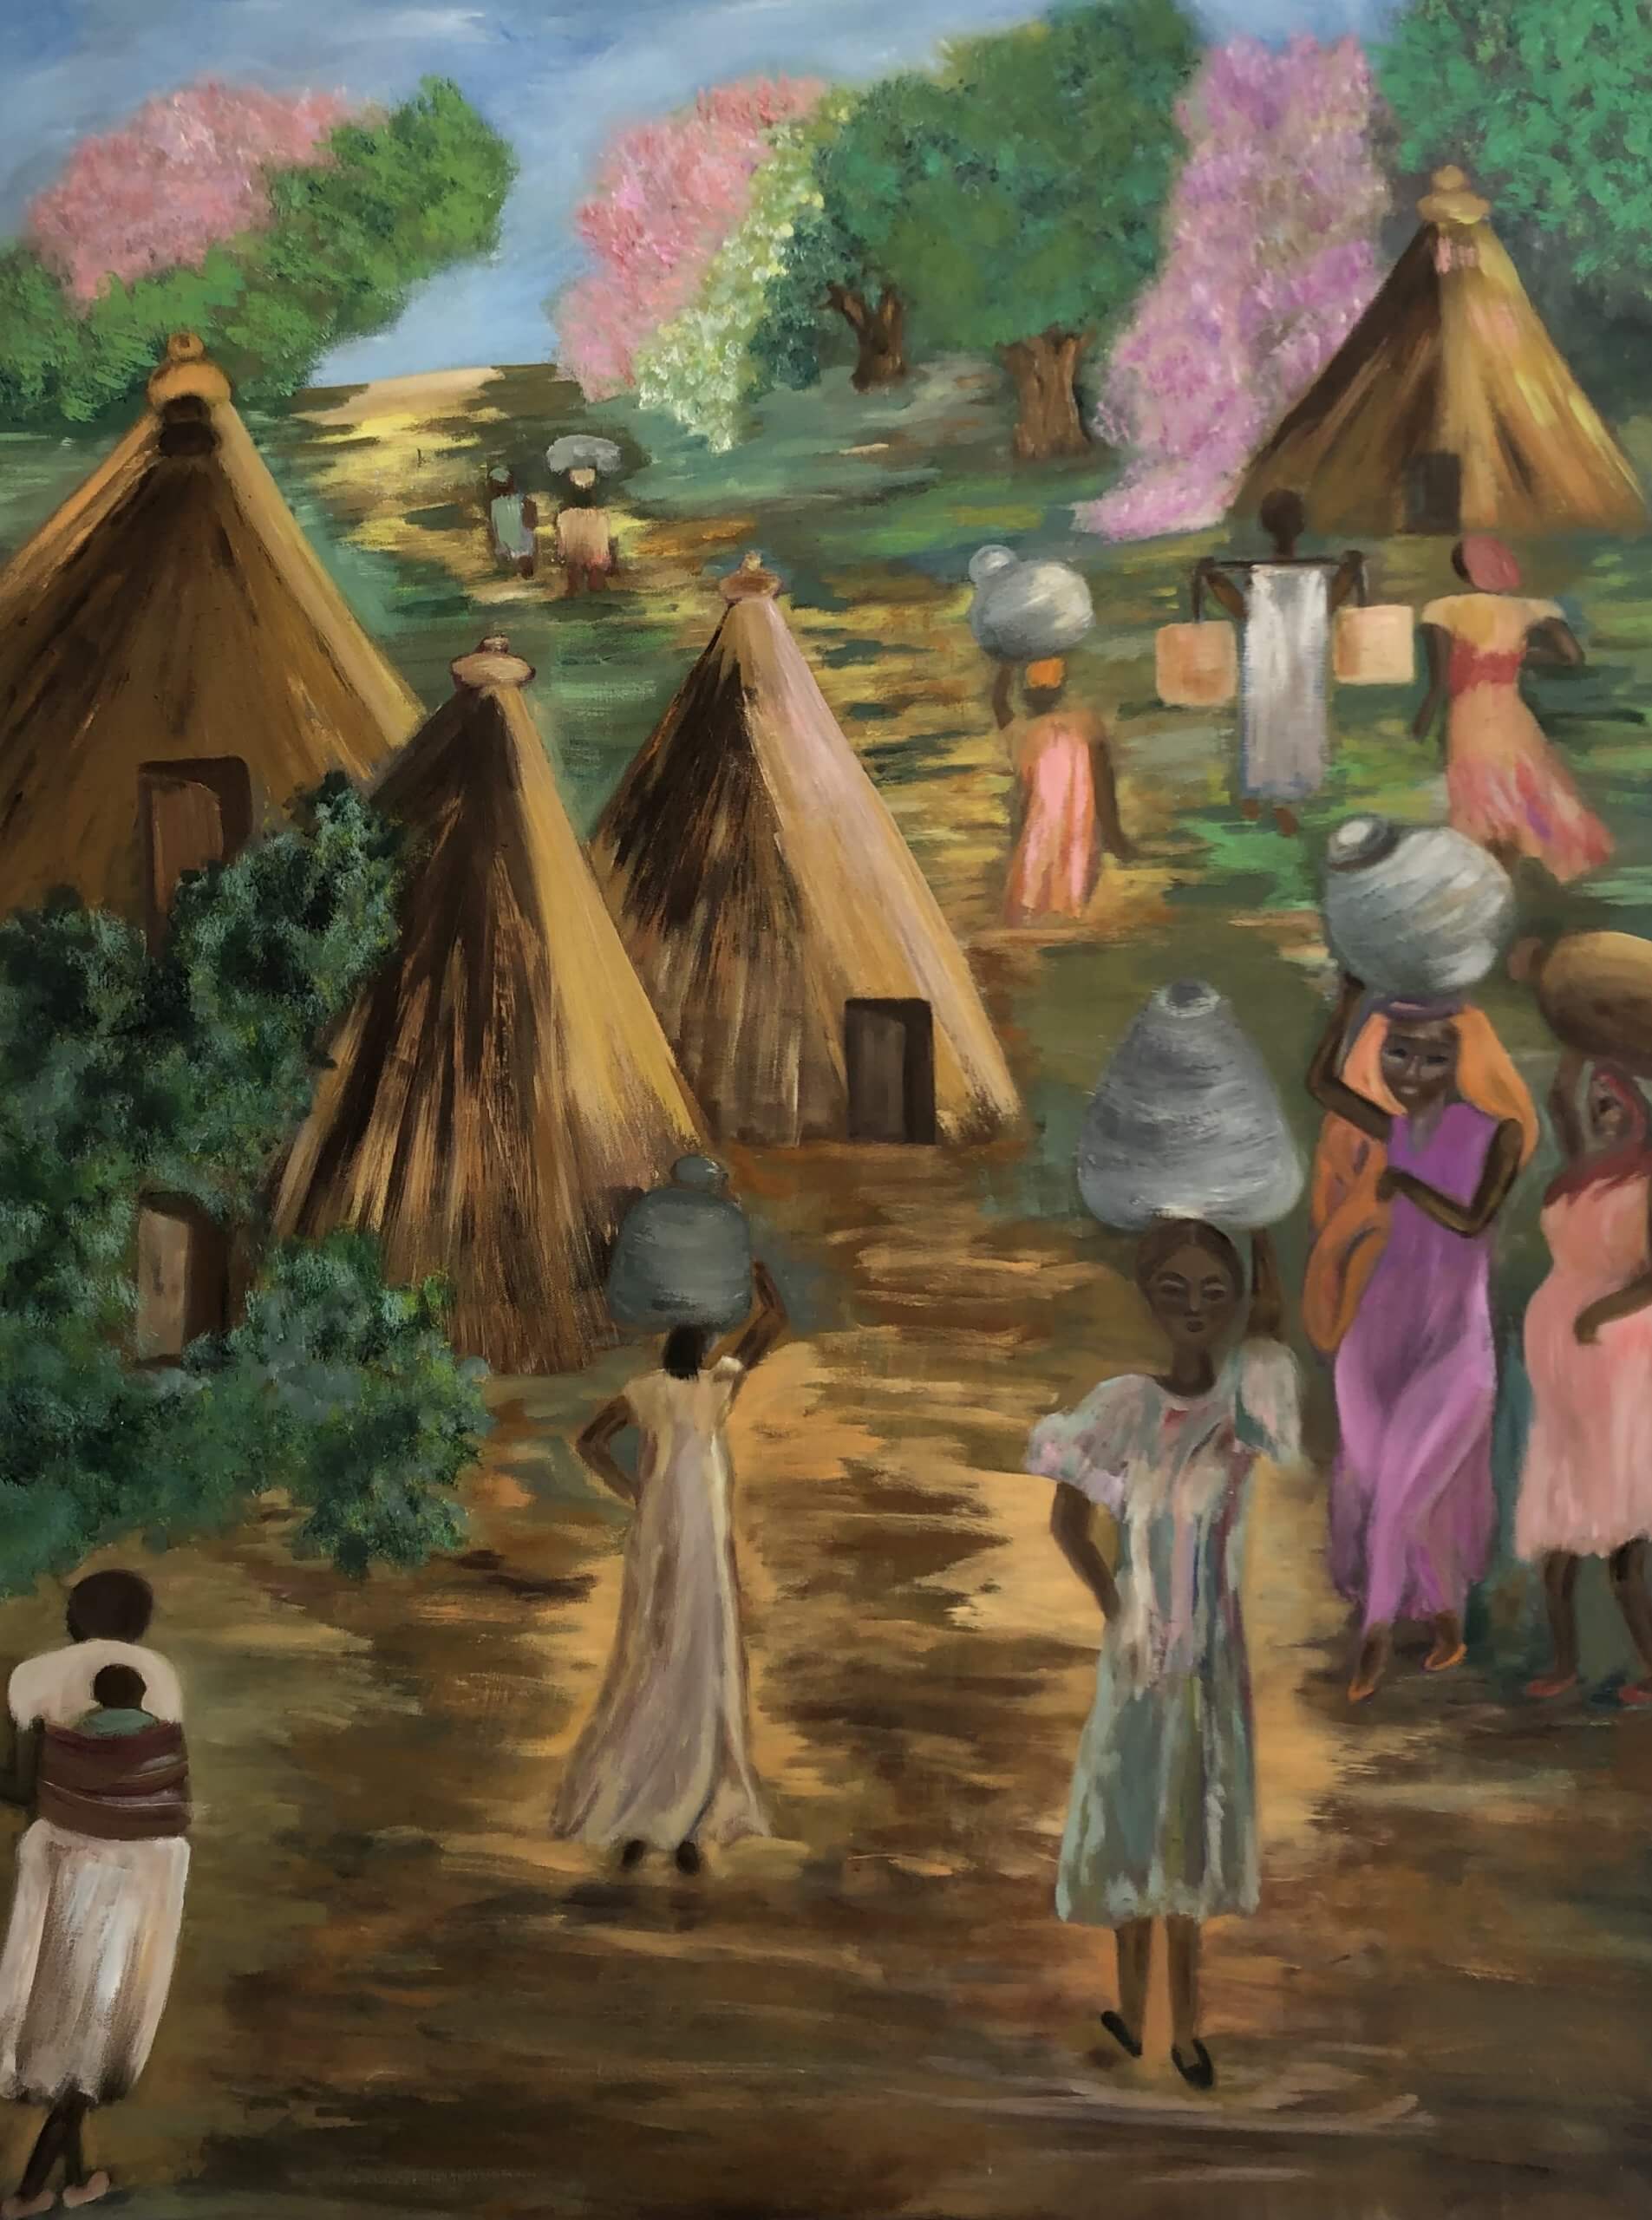 Hoda Awad, "The Village," Oil On Canvas, 40" x 30"